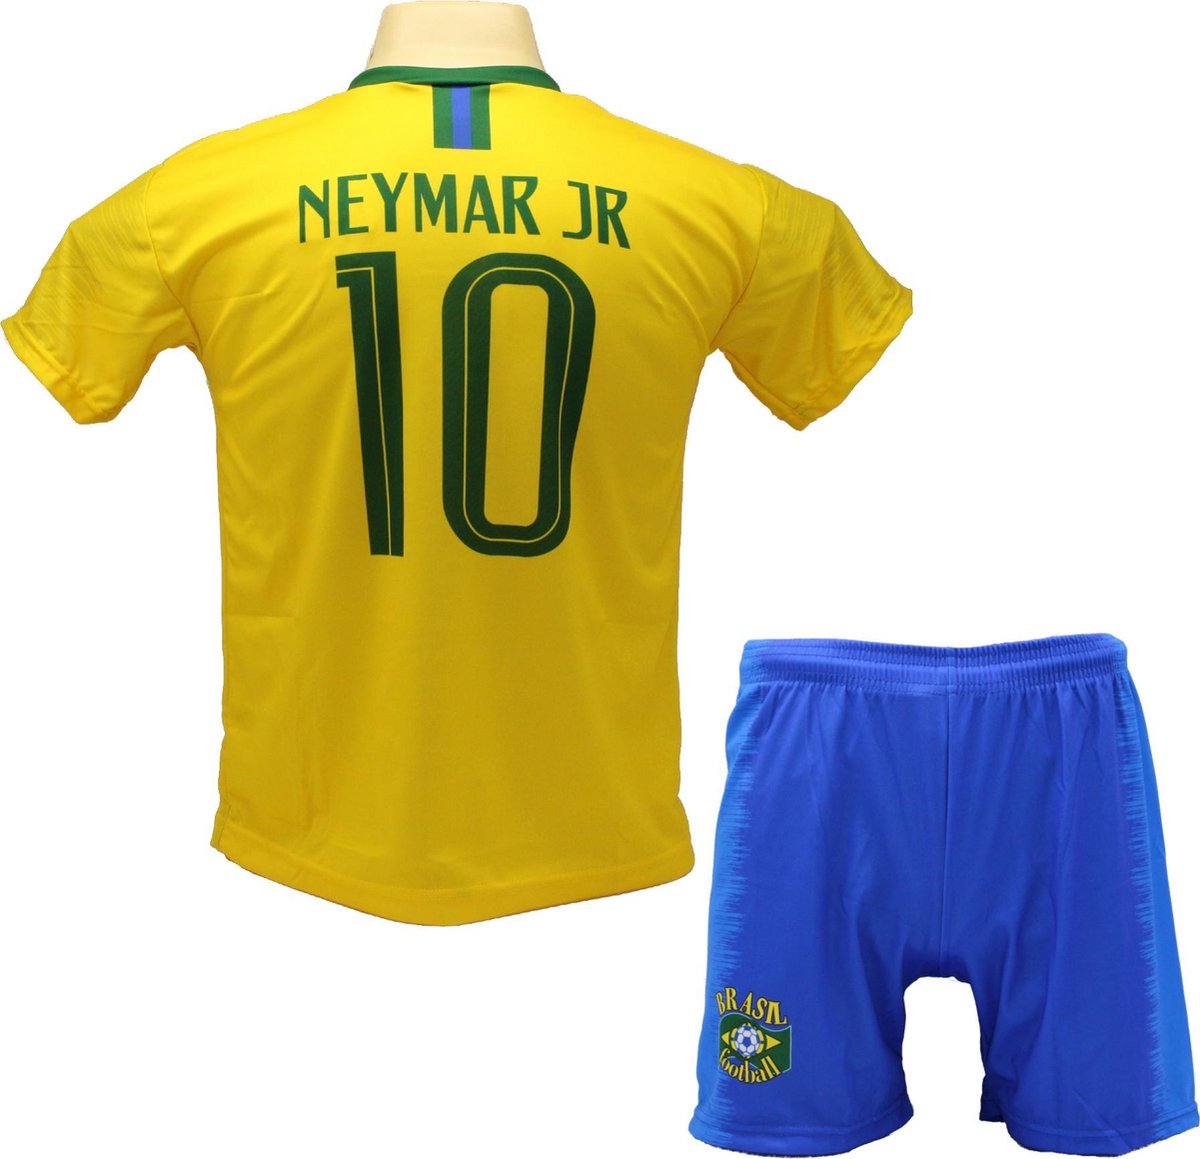 Neymar Brazilië Thuis Tenue | Voetbalshirt + Broek Set | EK/WK voetbaltenue  - Maat: S... | bol.com